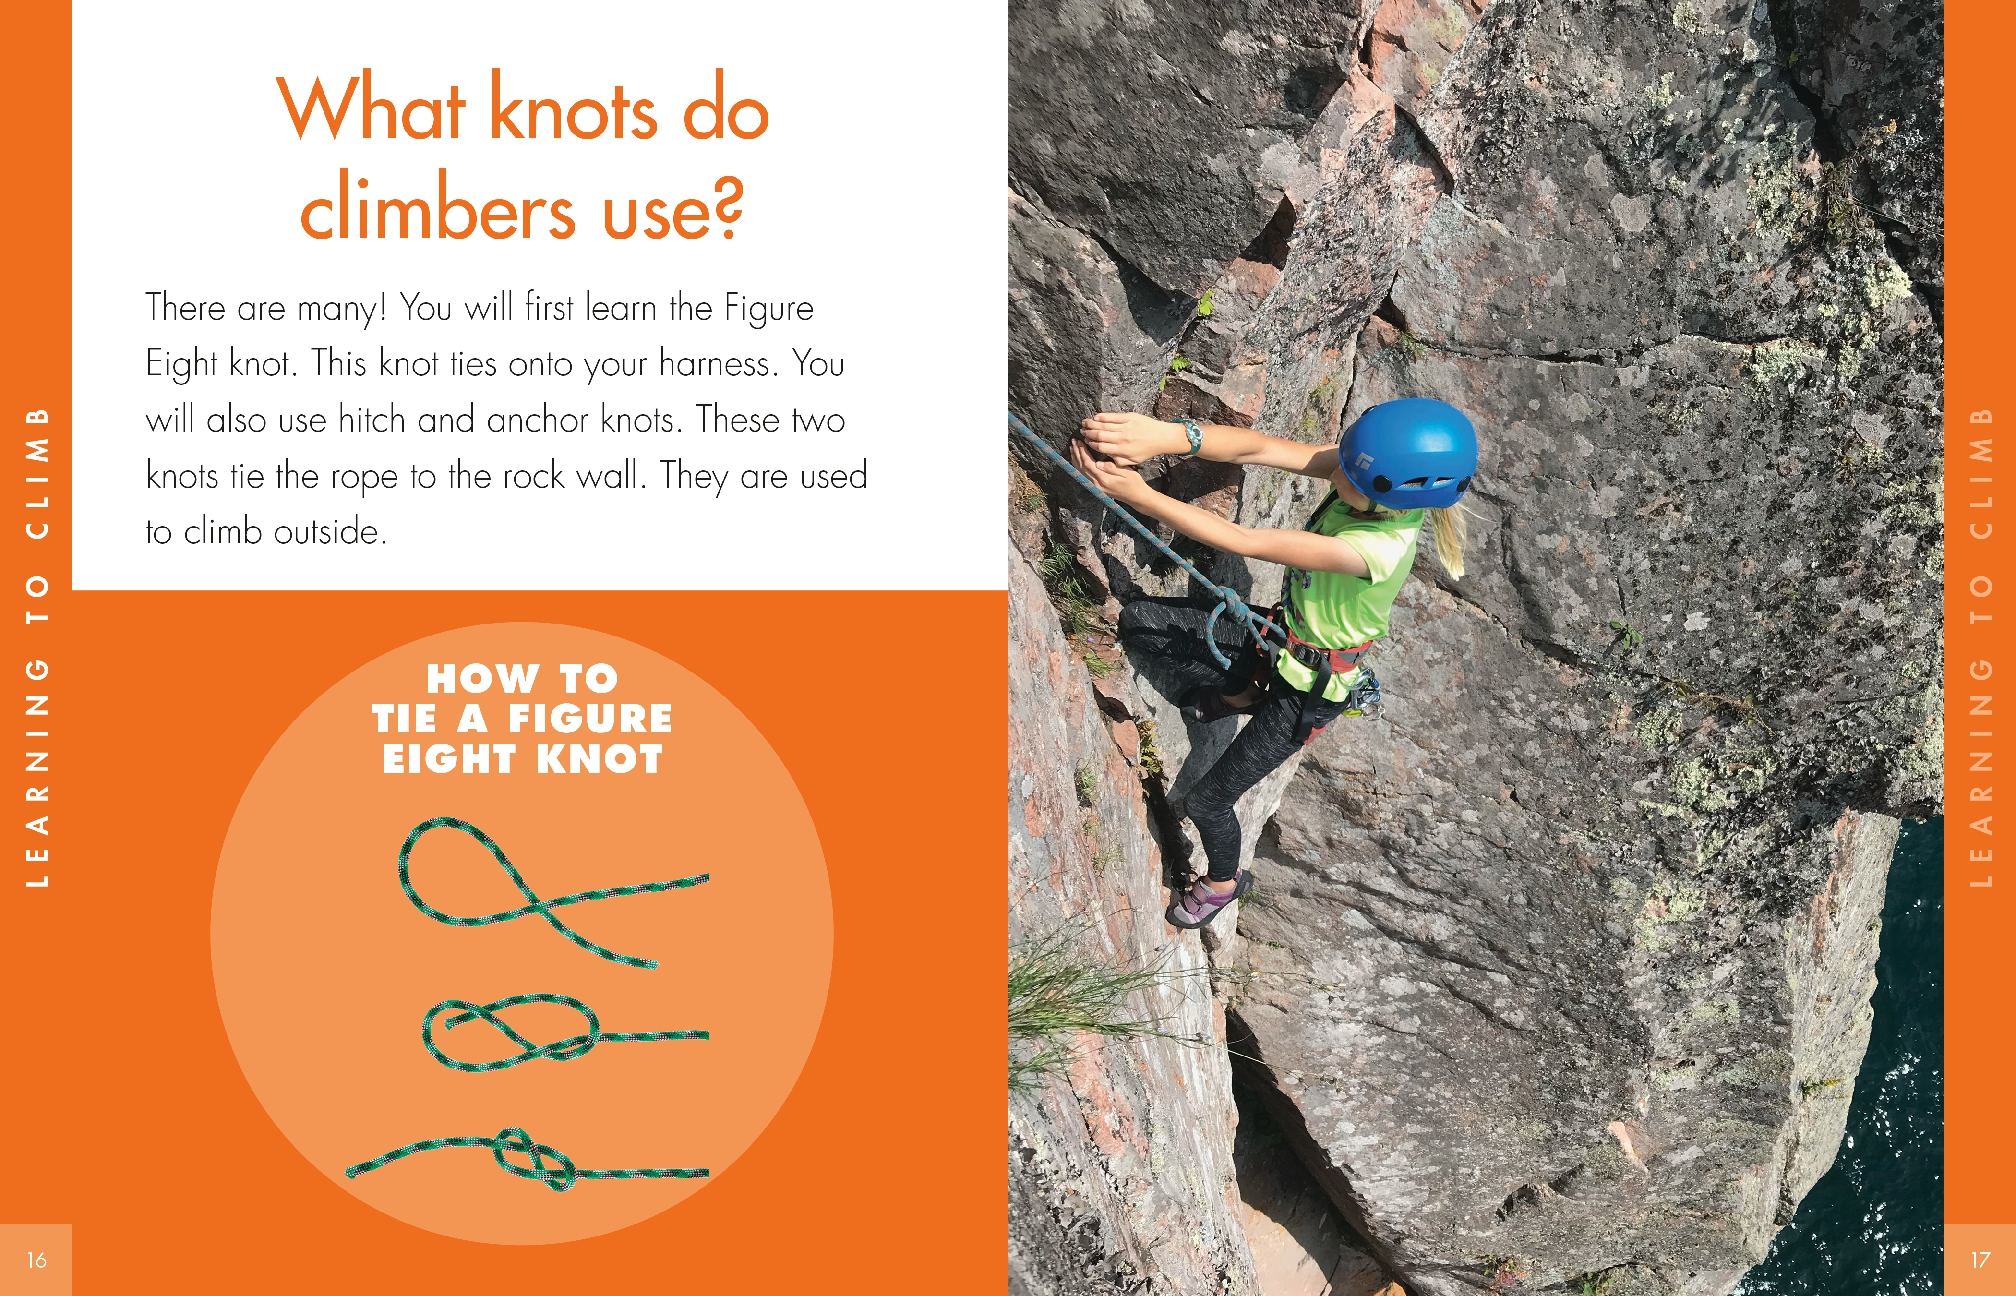 Curious about Rock Climbing